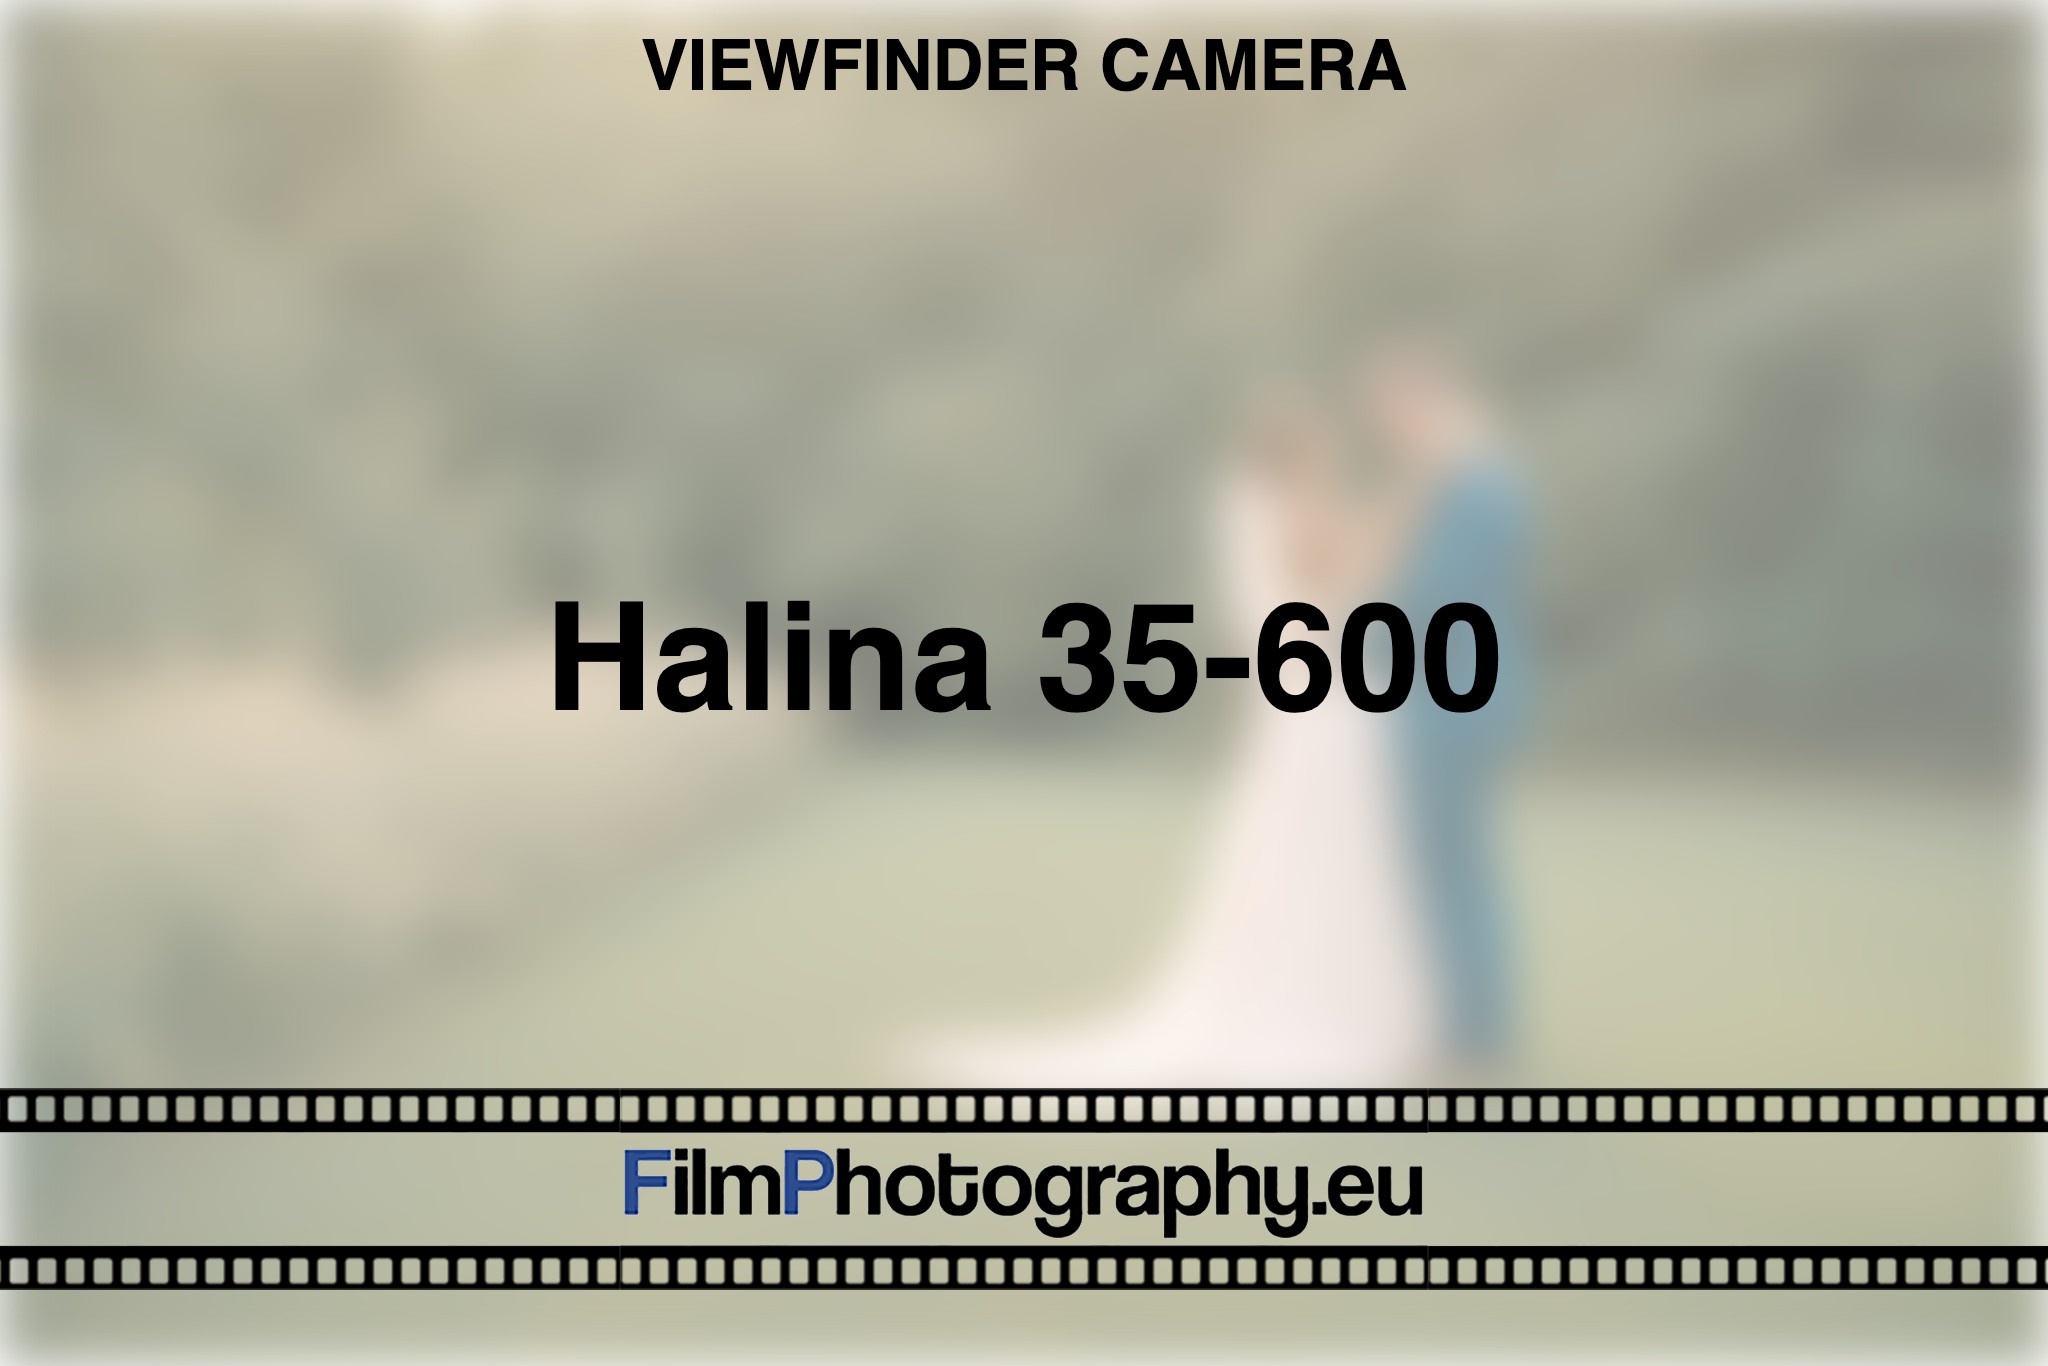 halina-35-600-viewfinder-camera-bnv